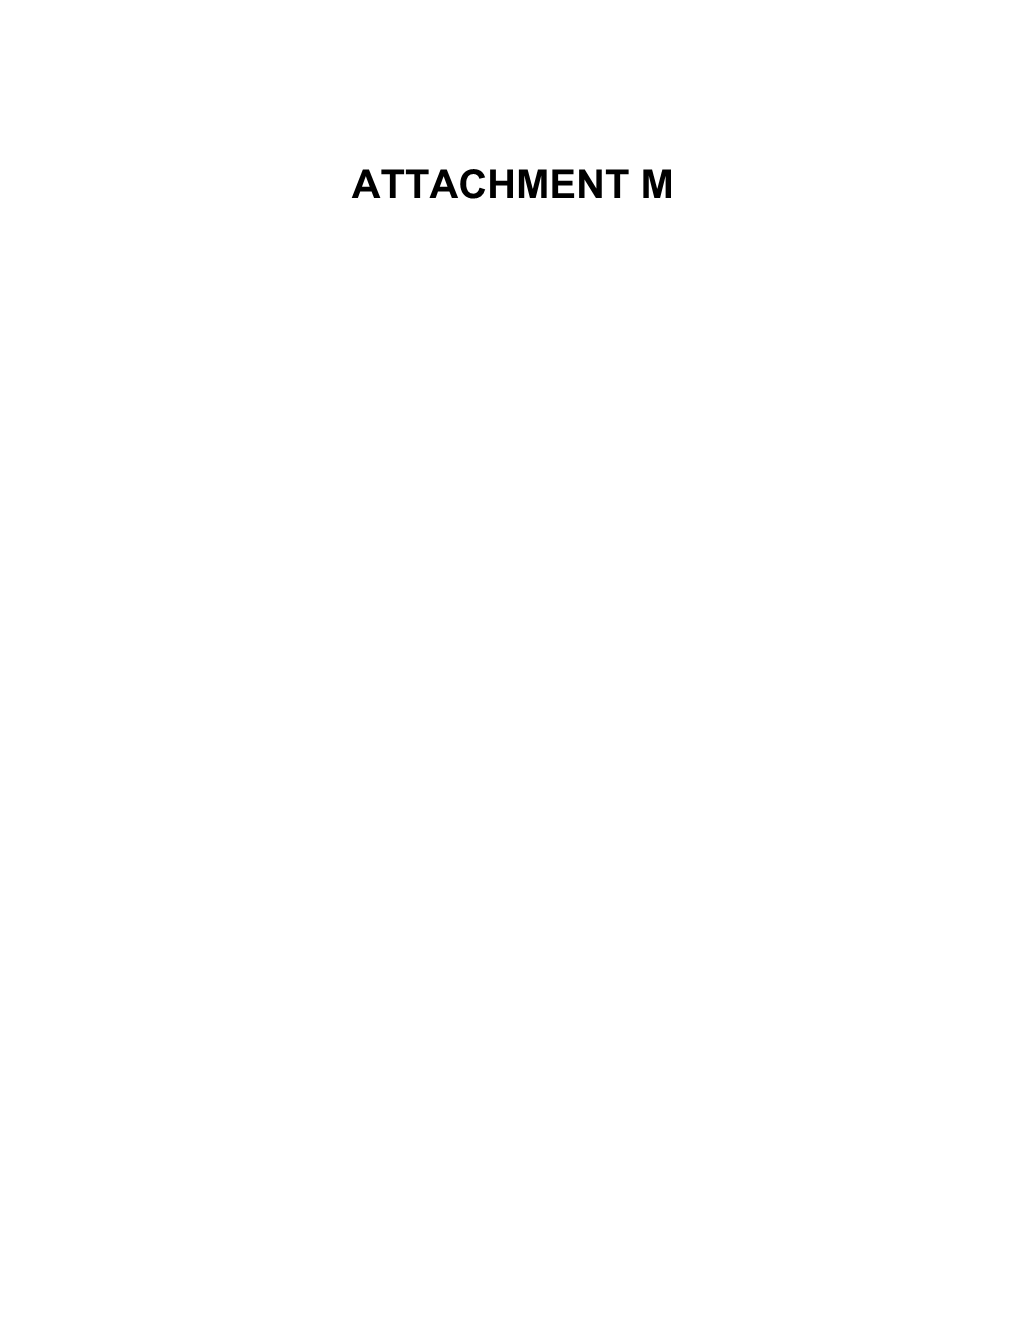 Attachment M